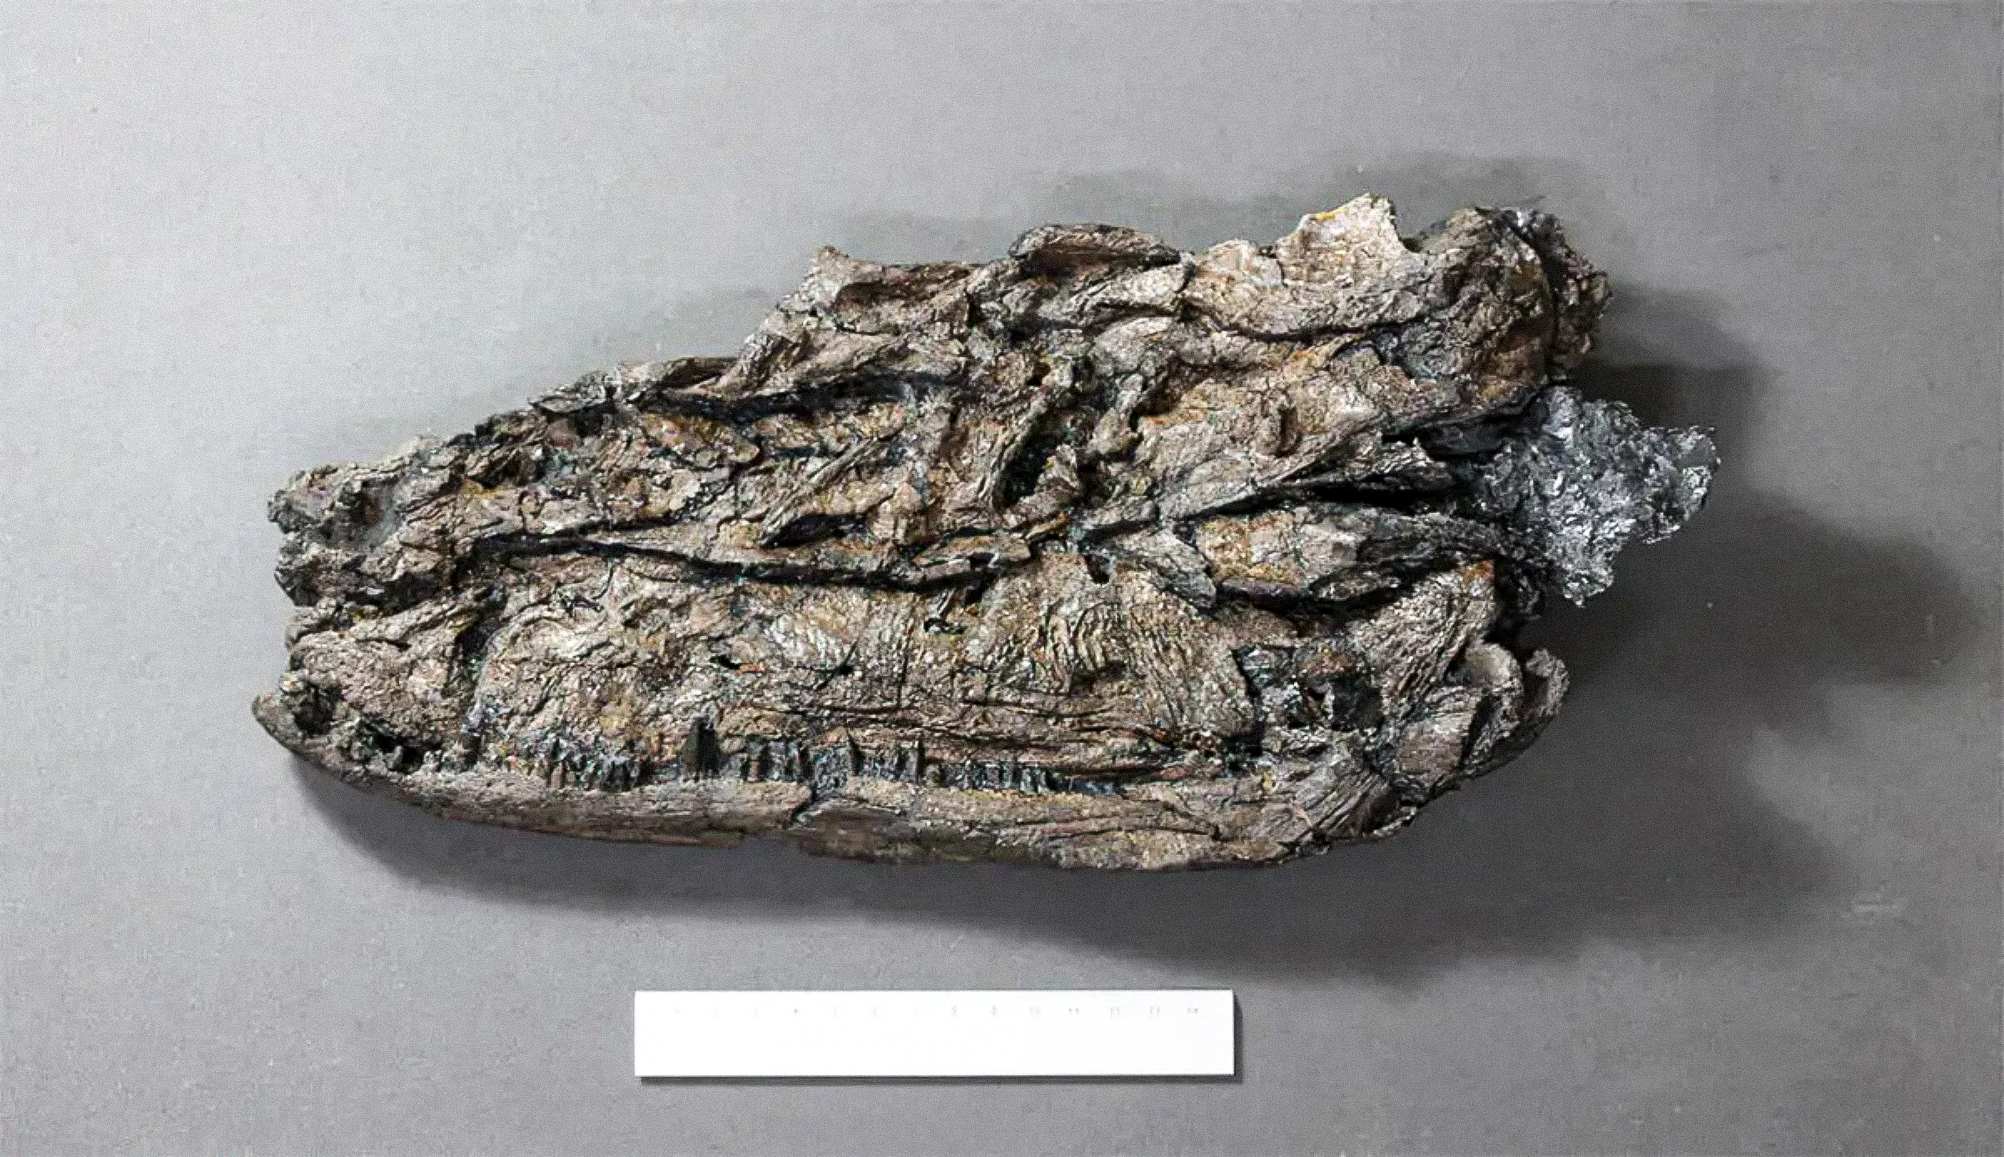 Procesi i fosilizimit ka bërë që ekzemplarët e Crassigyrinus të bëhen të ngjeshur.